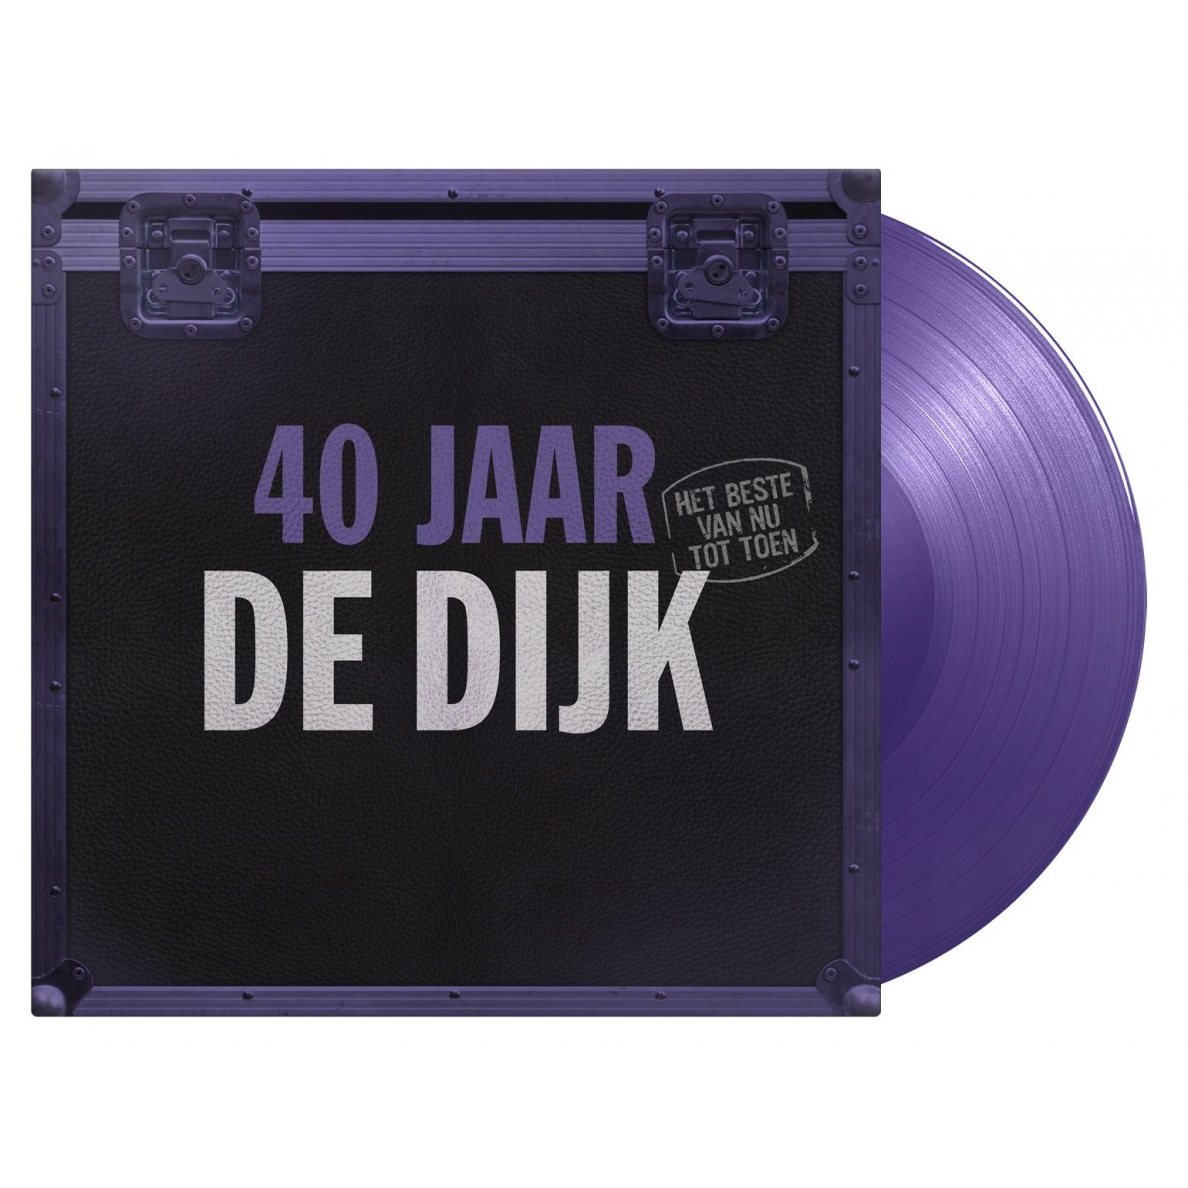 De Dijk (더 디크) - 40 Jaar : Het Beste Van Nu Tot Toen [퍼플 컬러 2LP]